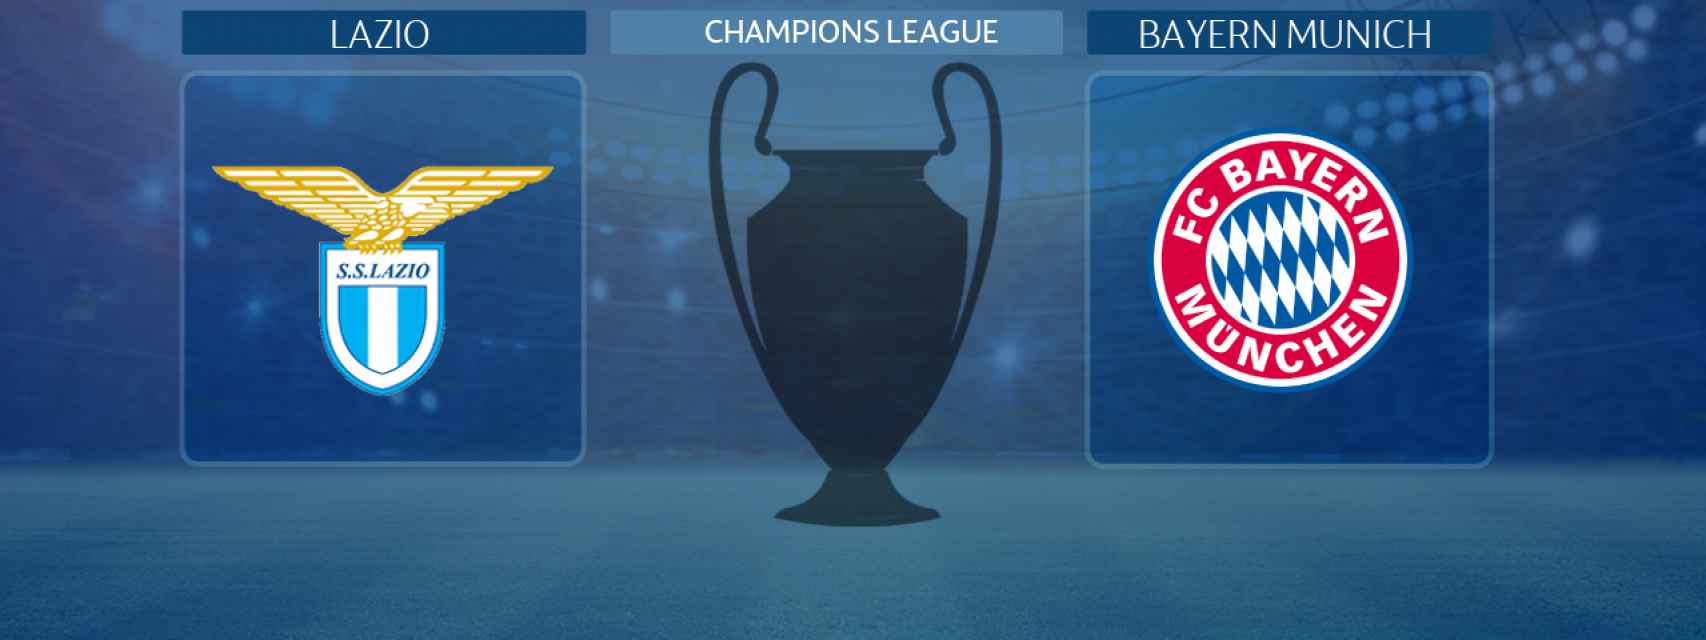 Lazio - Bayern Munich, partido de la Champions League